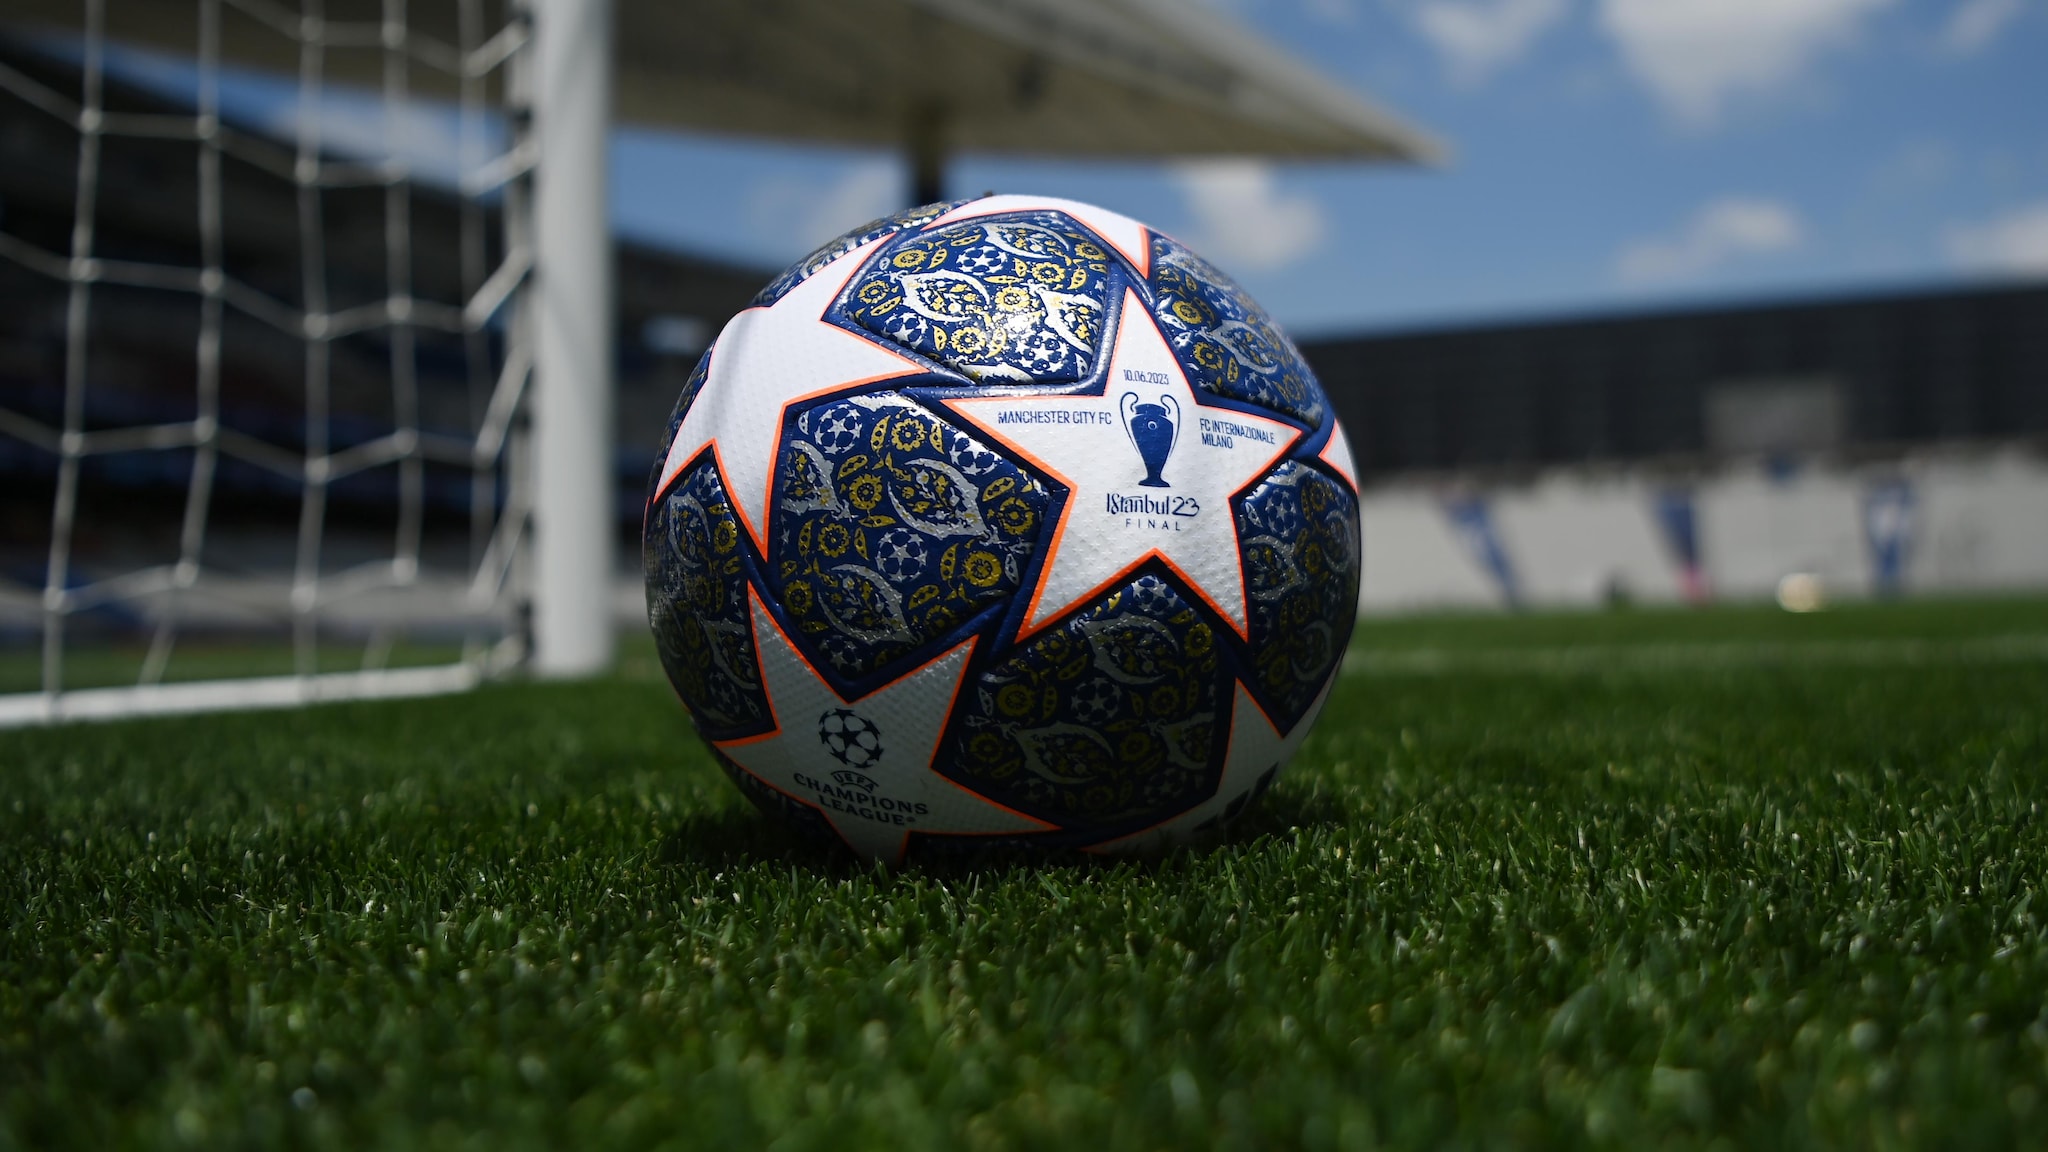 Official Champions League final match ball All eyes on 2023 Starball UEFA Champions League UEFA